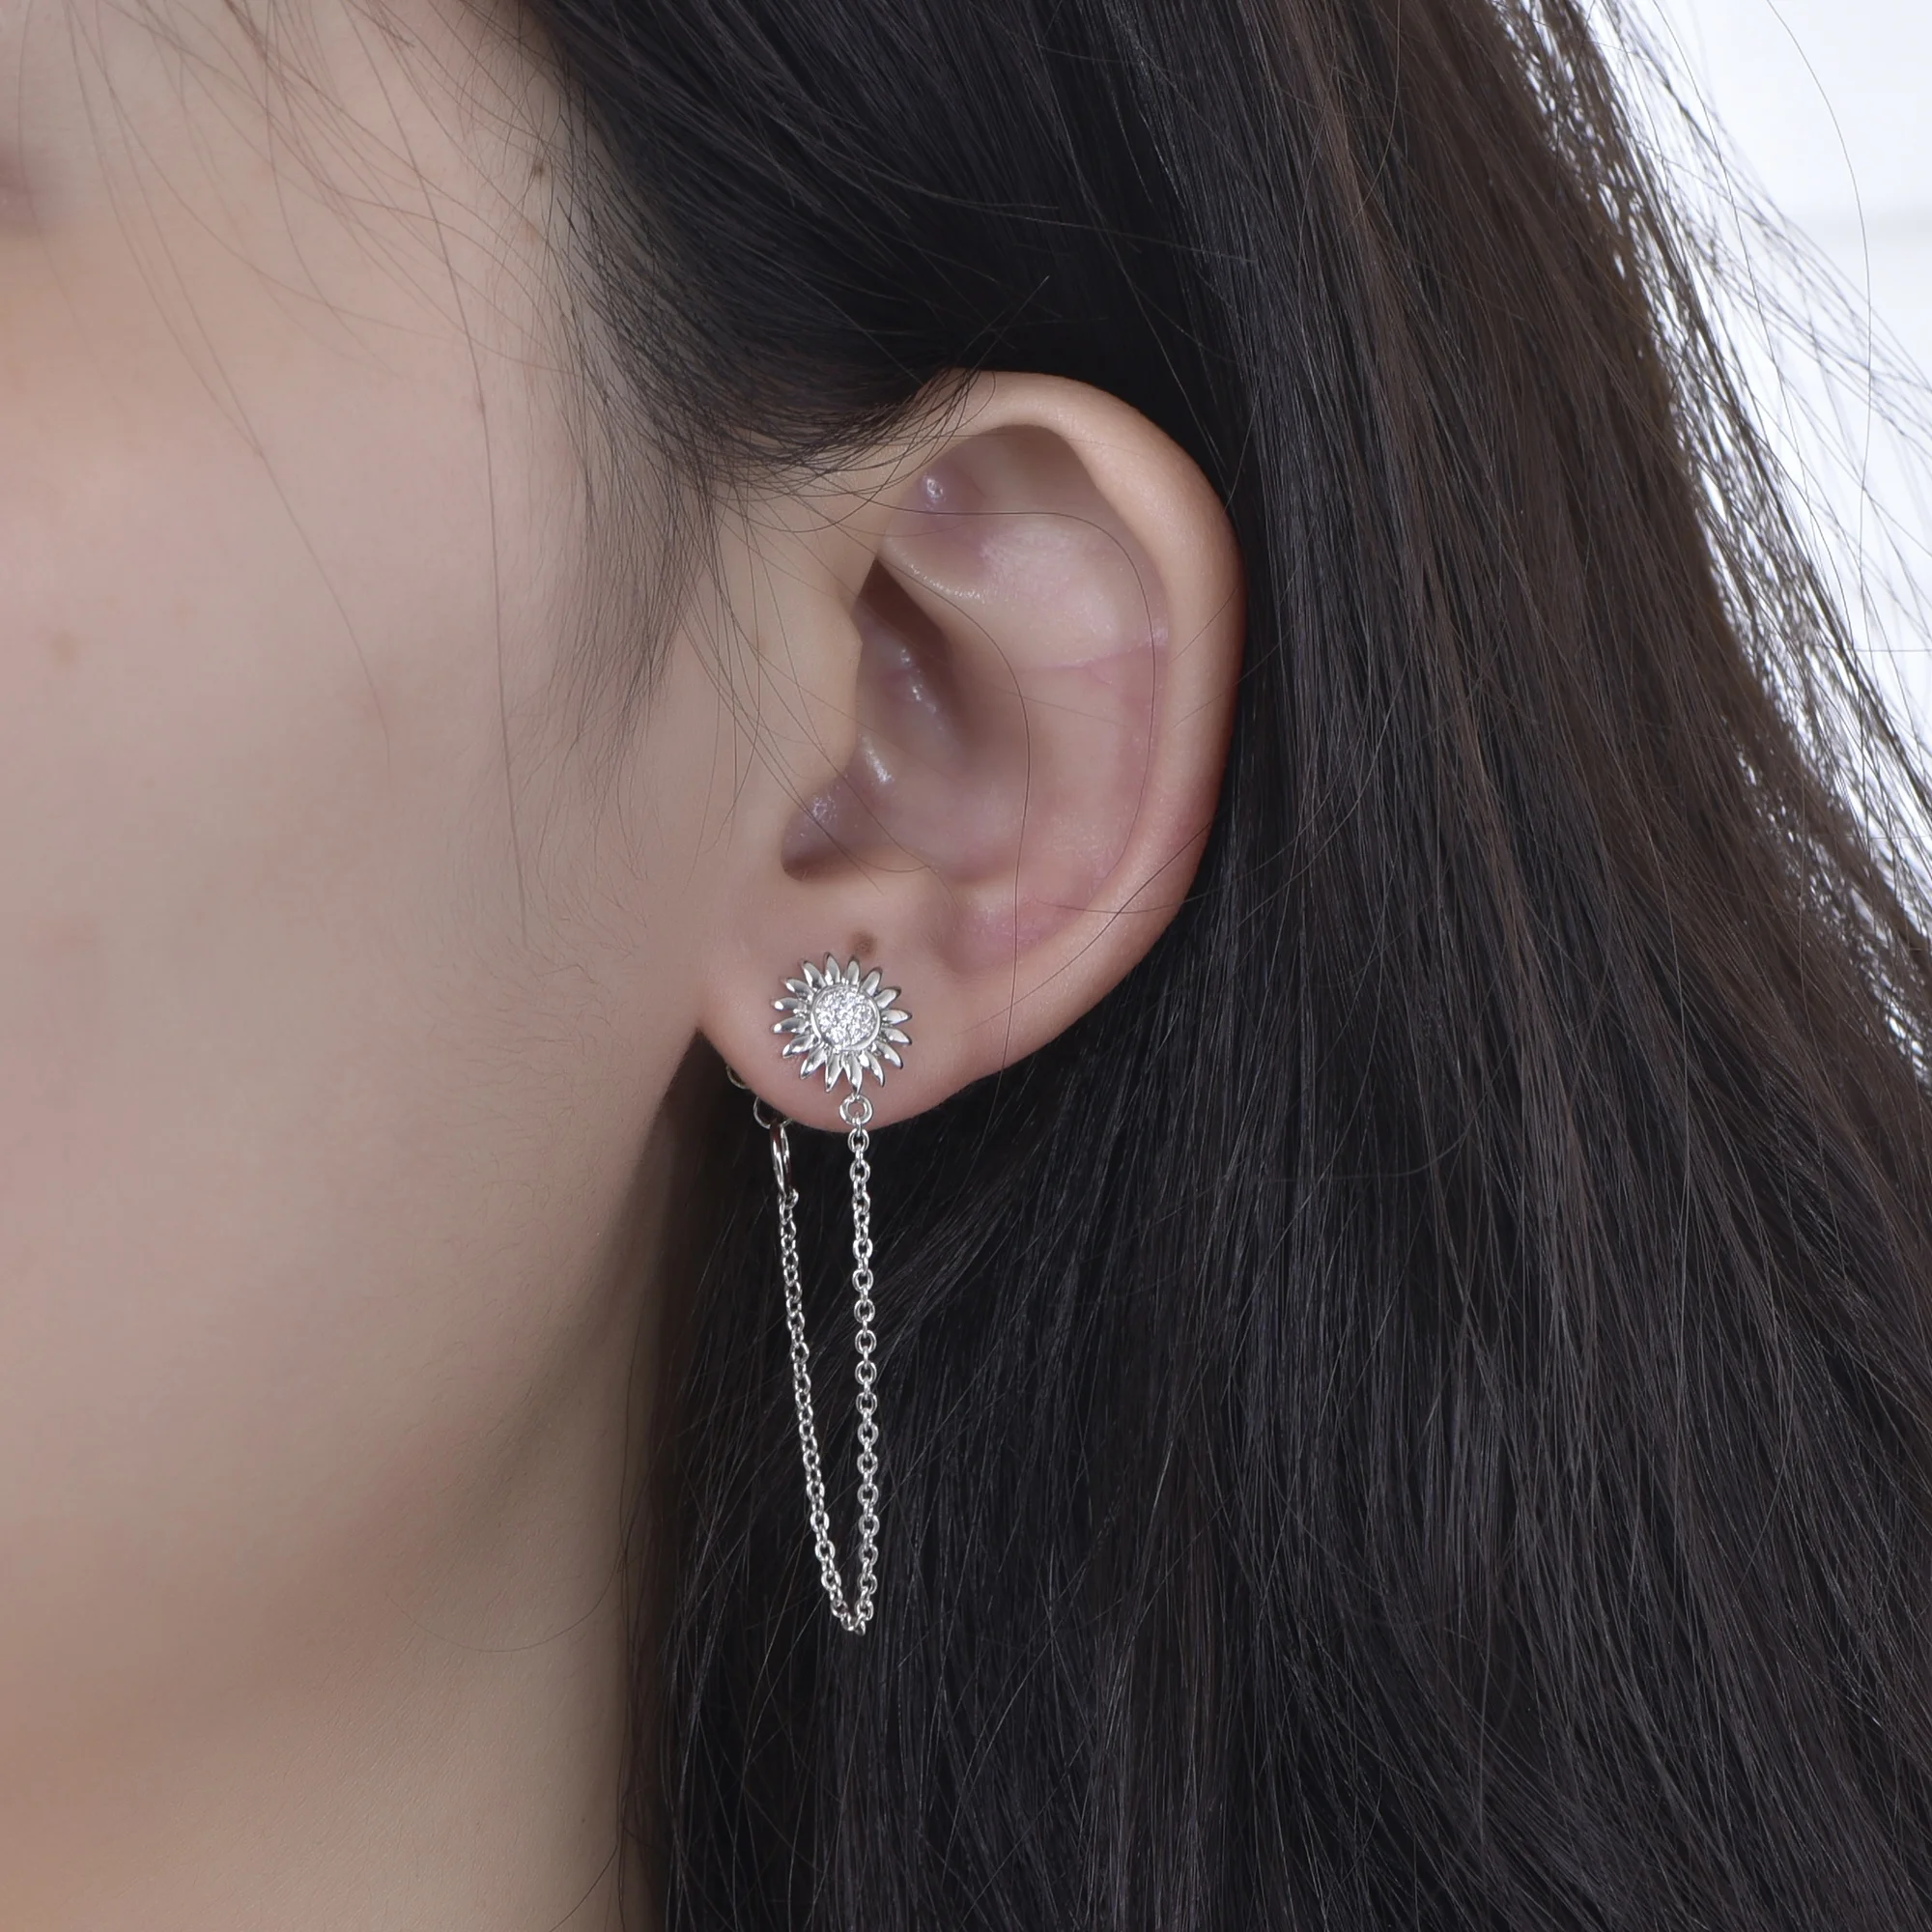 Women mens double piercing ear ring clip on chain earrings star cuff with long chain earrings dangle drop link chain earrings